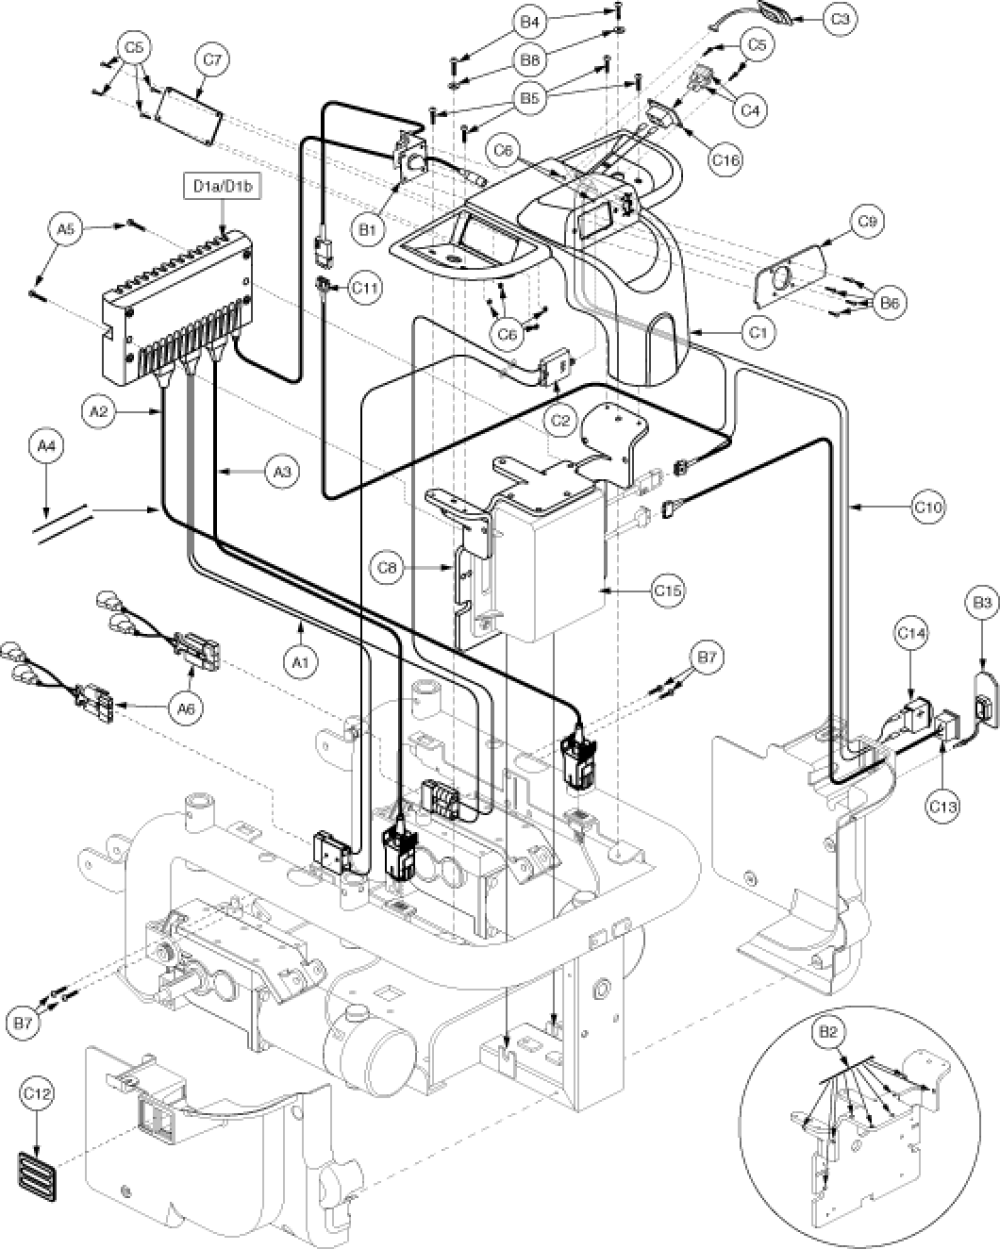 Remote Plus Tray, Domestic, Q1121, Eleasmb2985 parts diagram